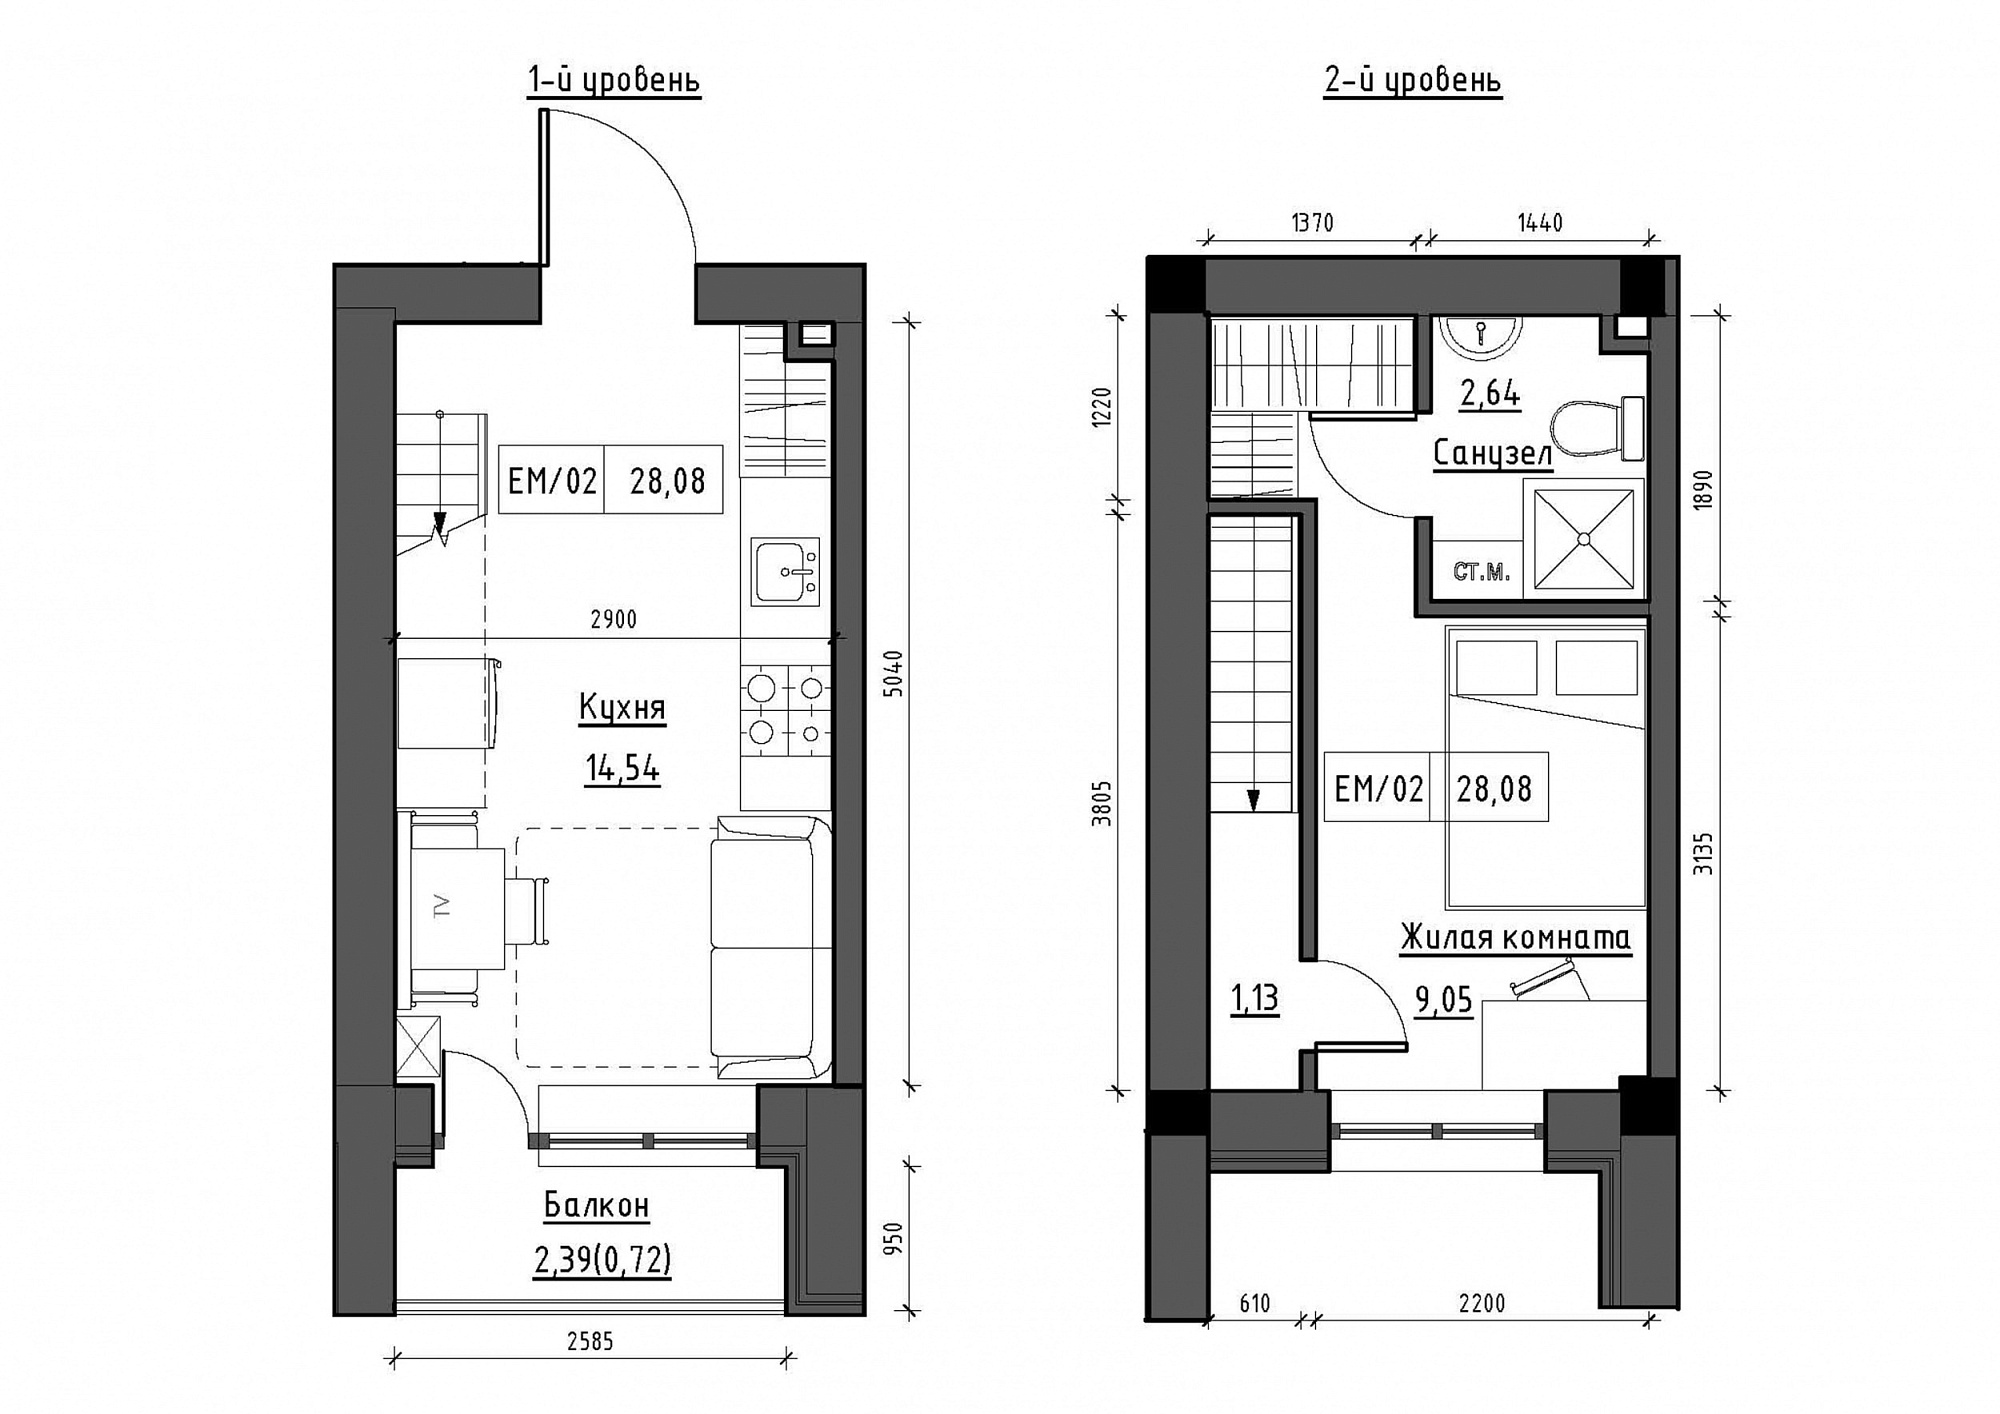 Planning 2-lvl flats area 28.08m2, KS-012-05/0010.